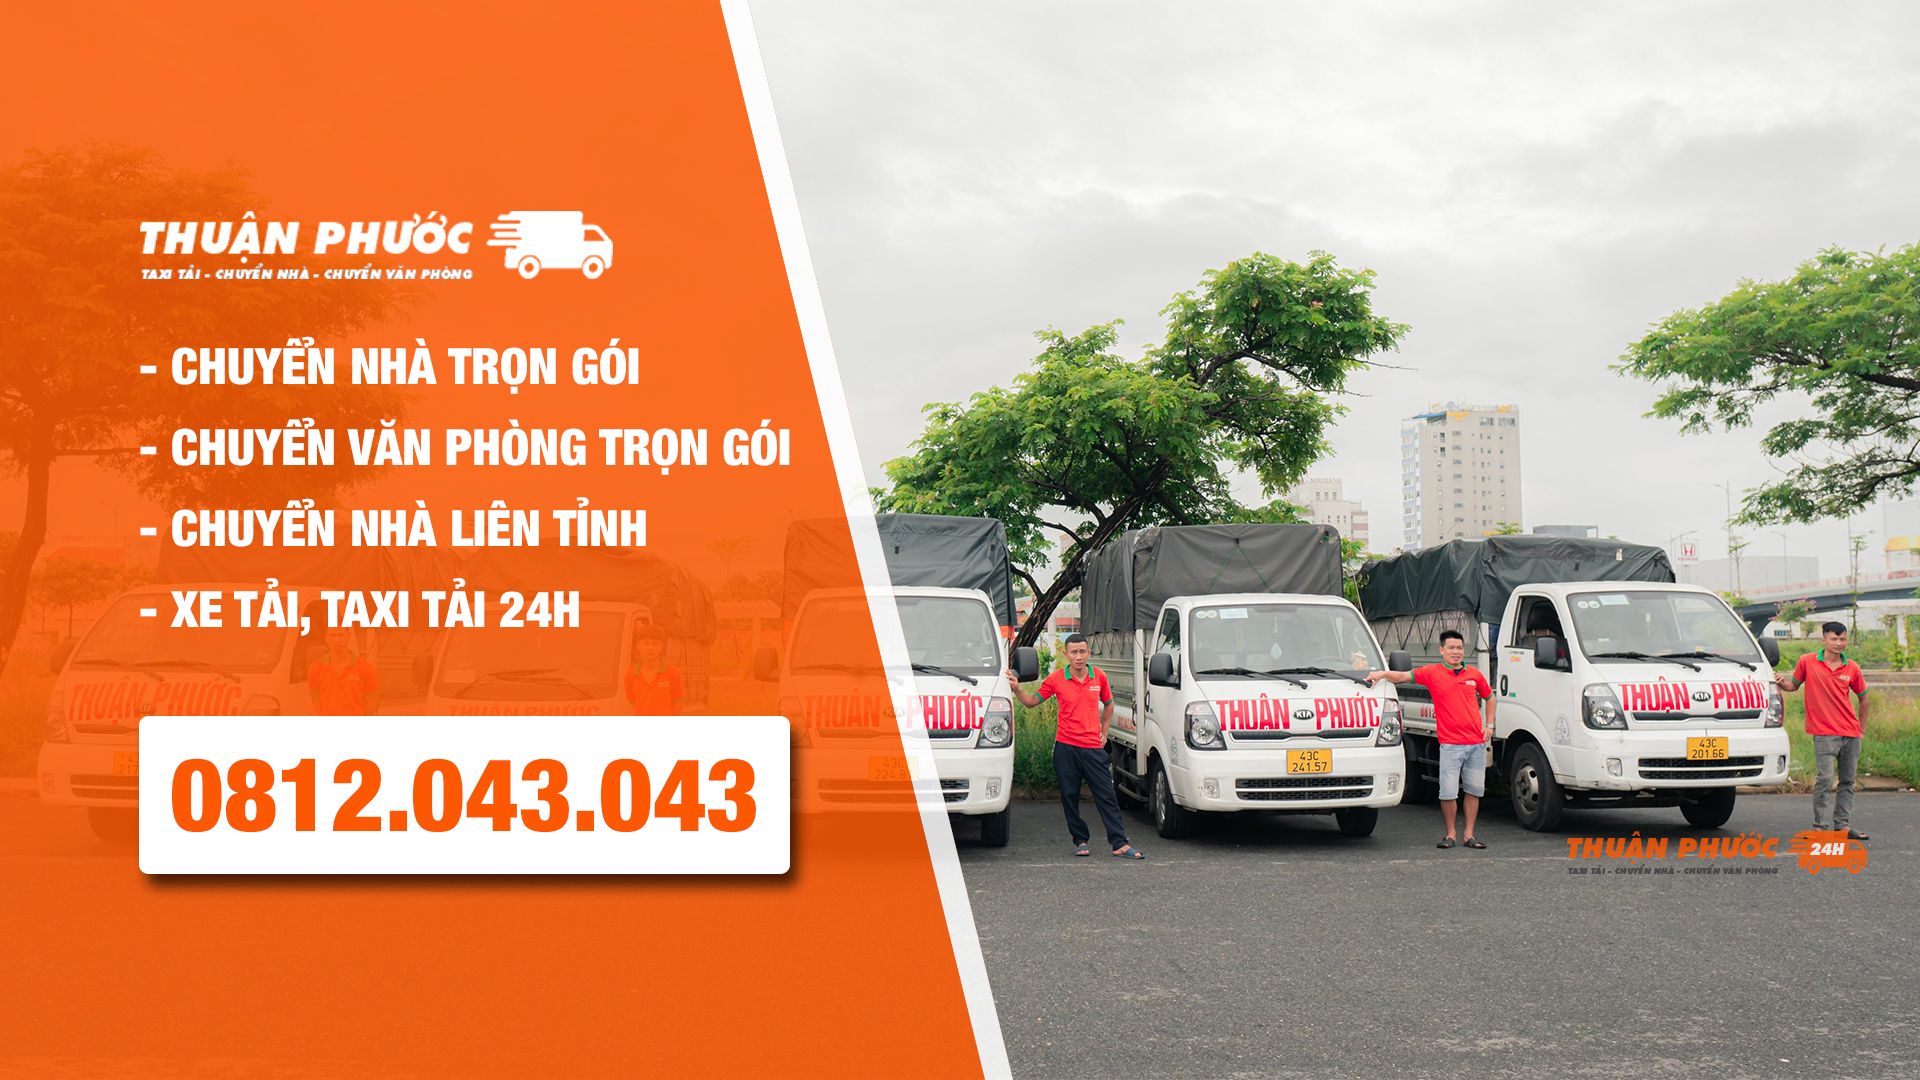 Công ty Taxi Tải Thuận Phước